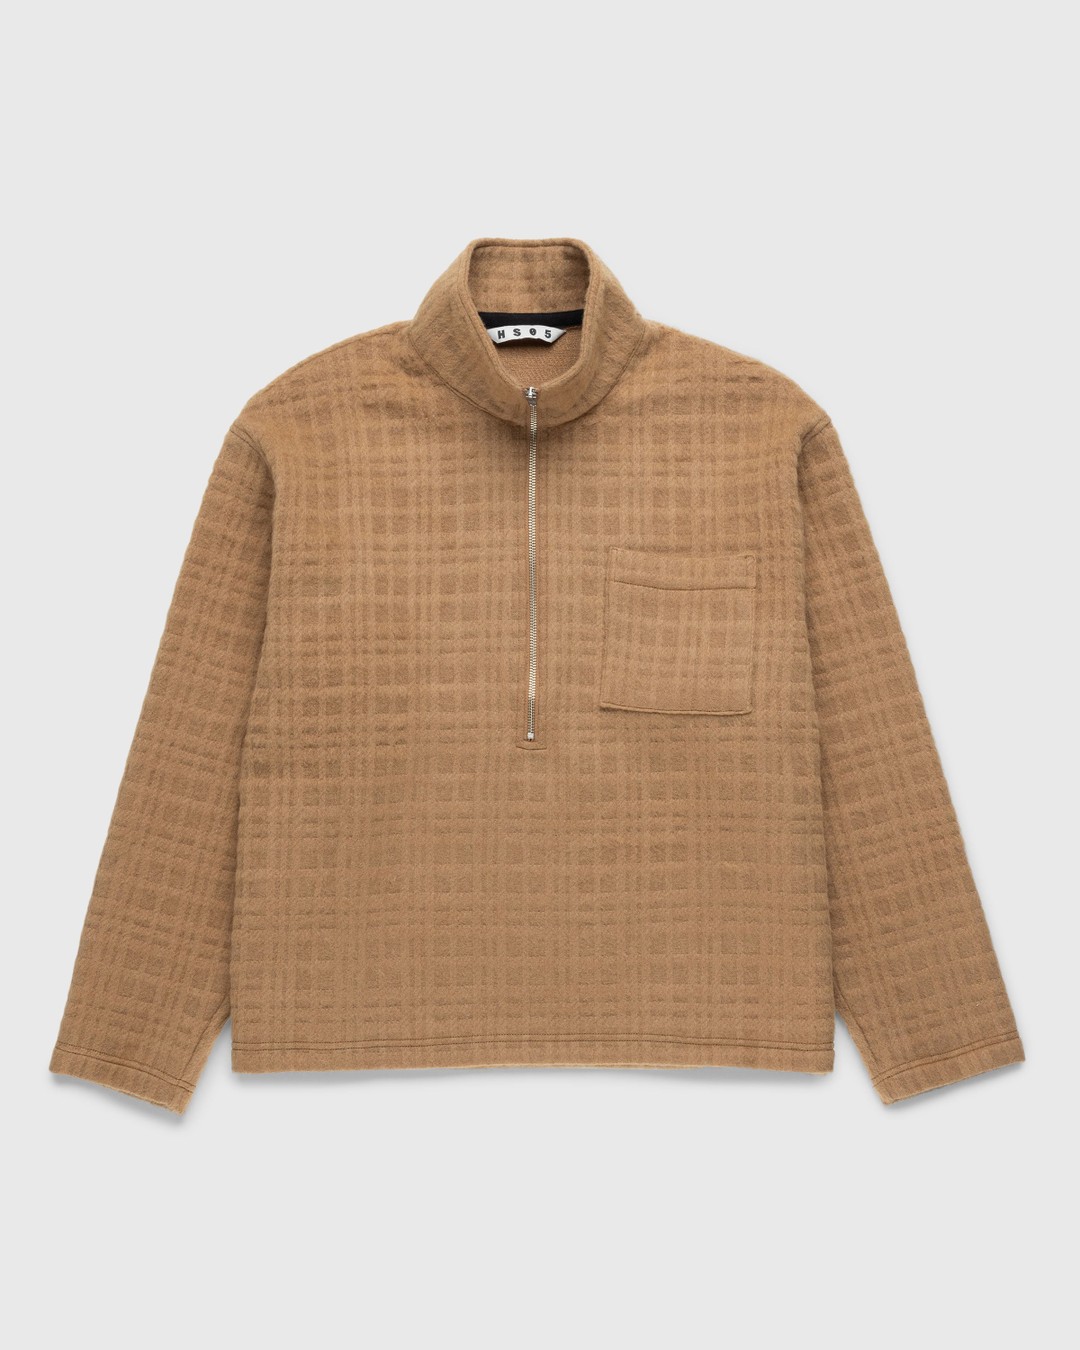 Highsnobiety HS05 – Recycled Half-Zip Wool Fleece Brown - Knitwear - Brown - Image 1